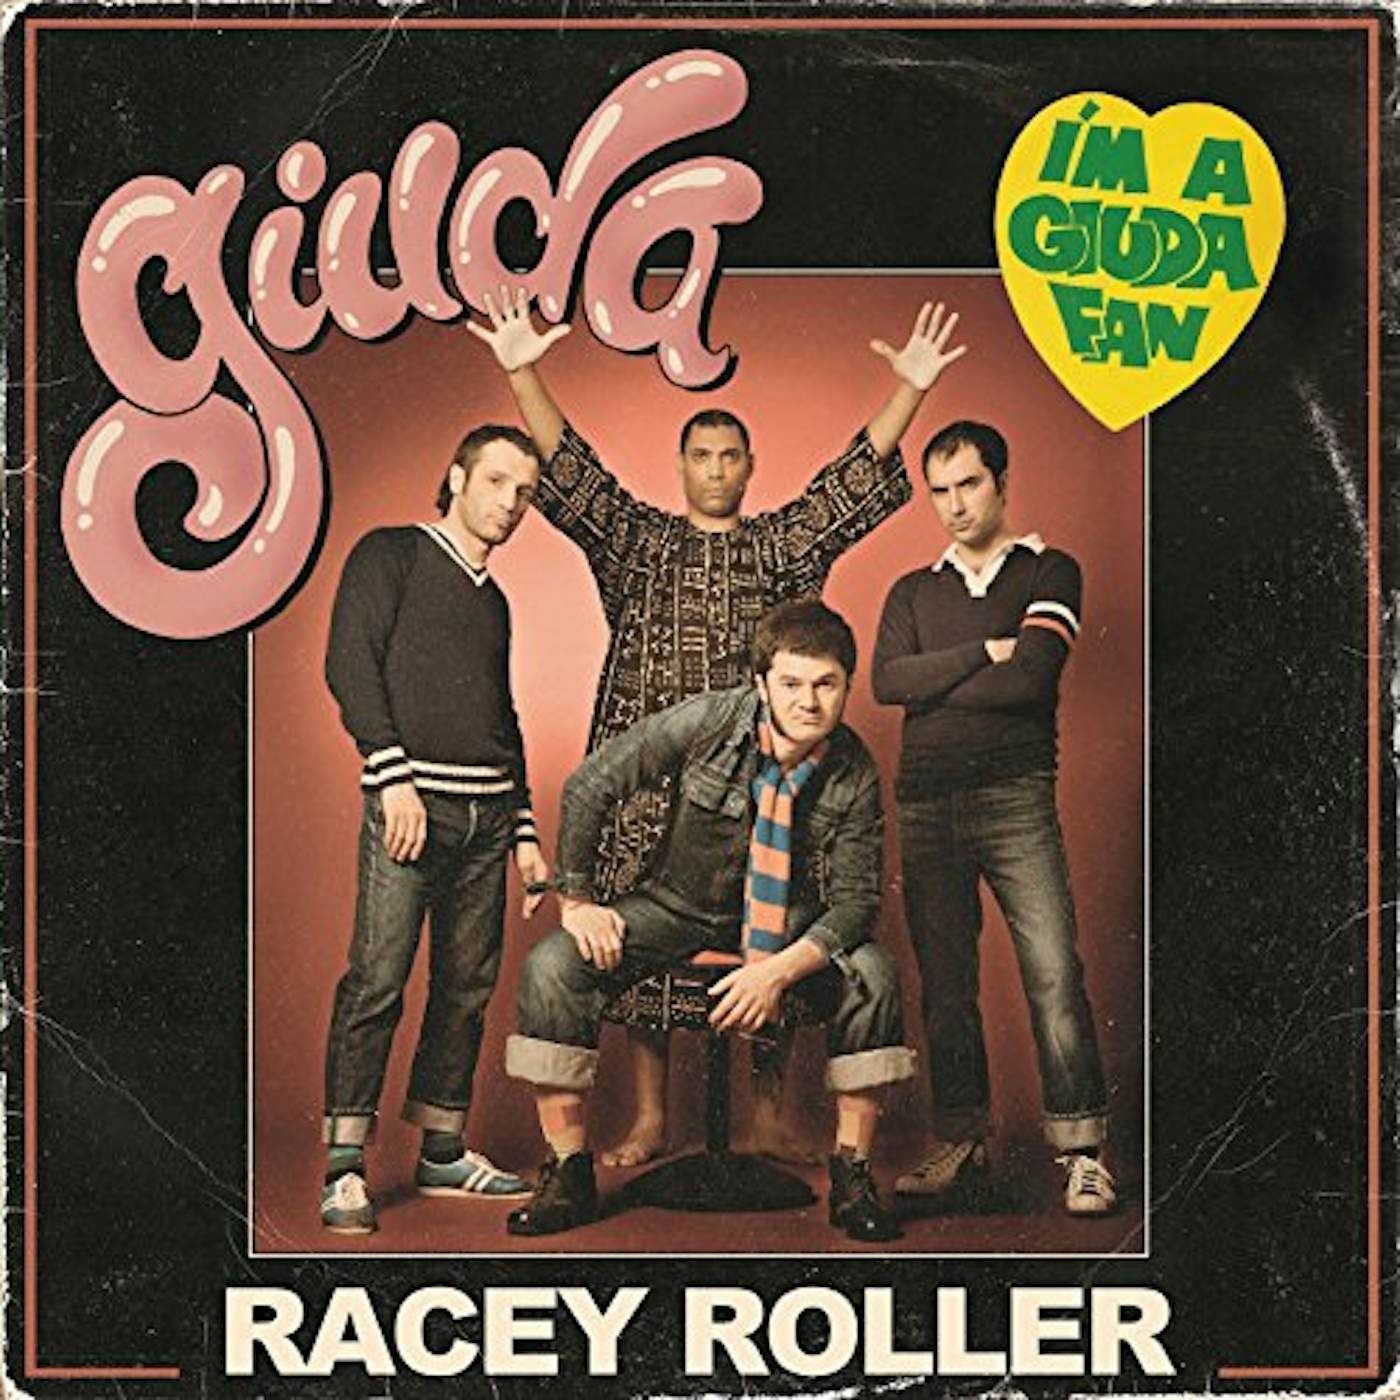 Giuda RACEY ROLLER CD